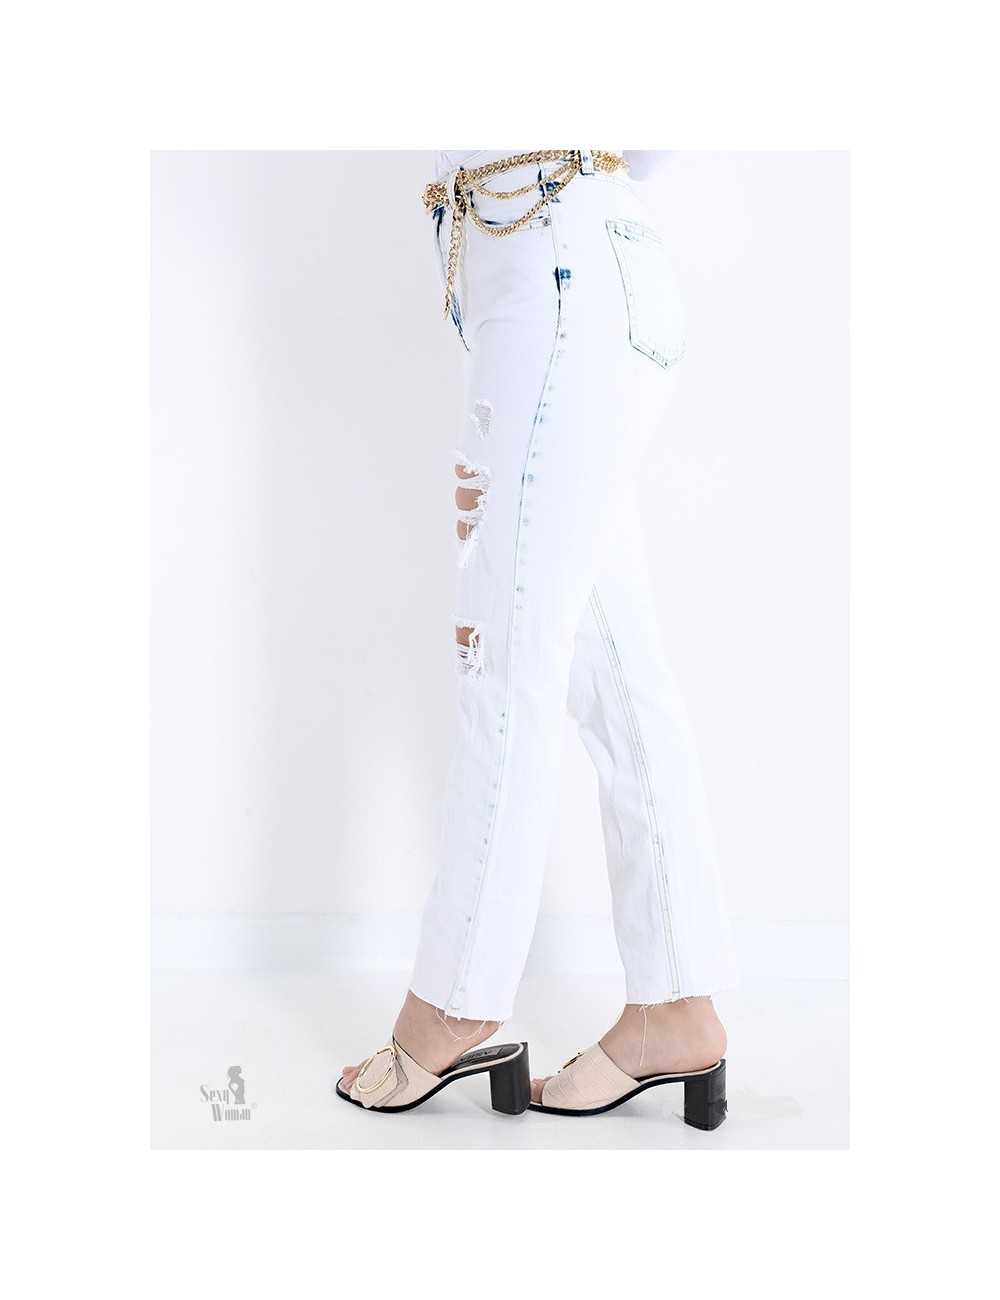 Jeans bianco slim fit elasticizzato con strappi - Jeans & Pantaloni Donna